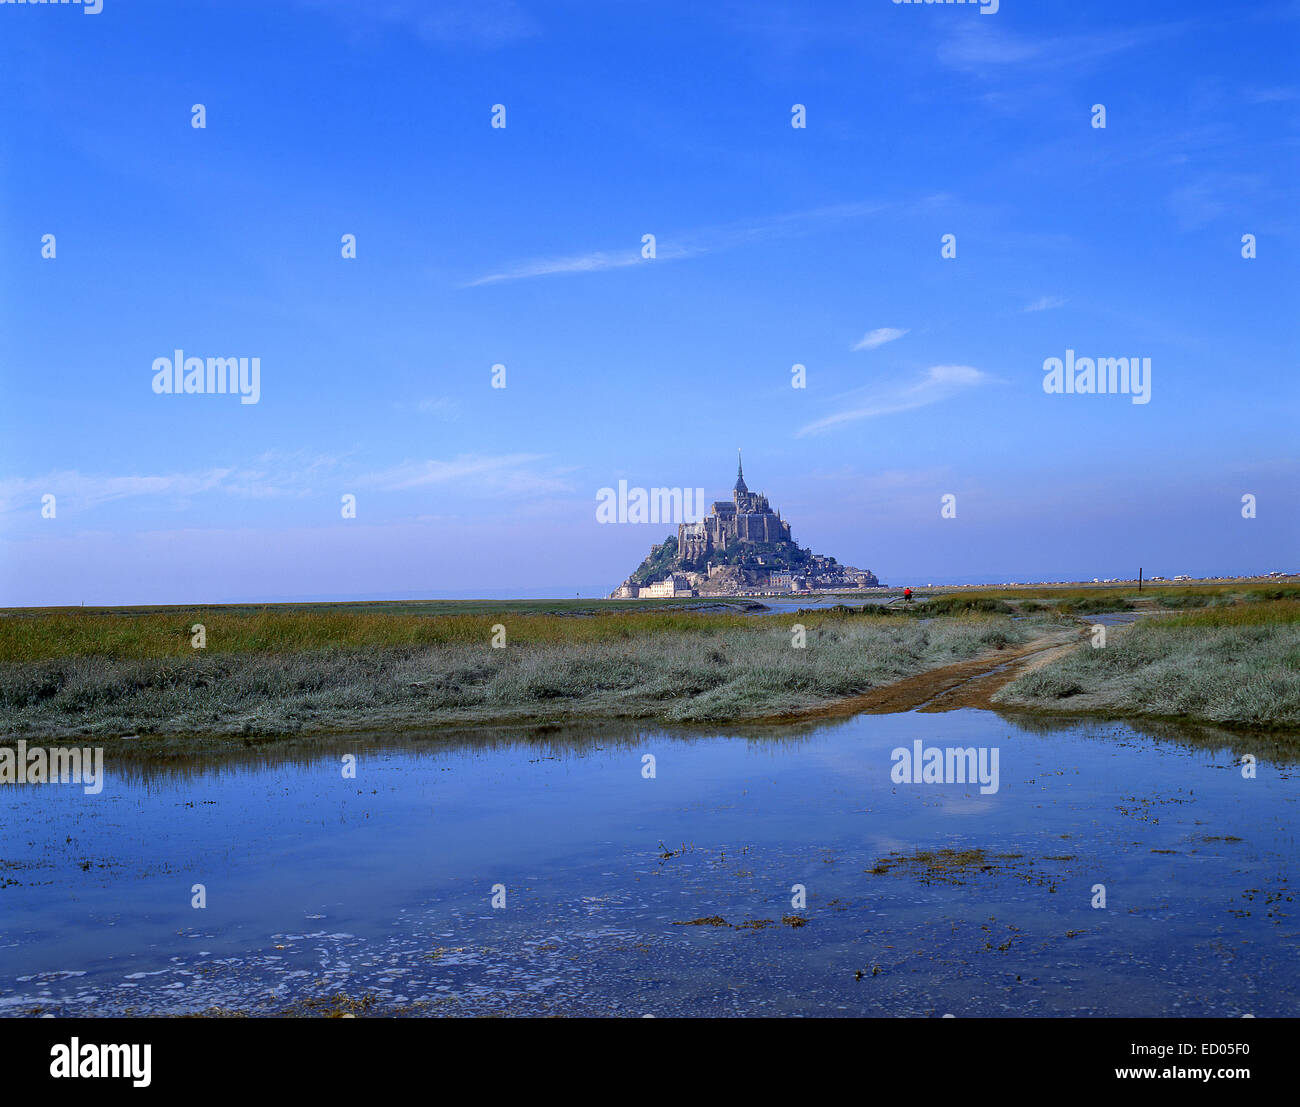 Le Mont Saint-Michel (Saint Michael's Mount), Manche, Lower Normandy Region, France Stock Photo